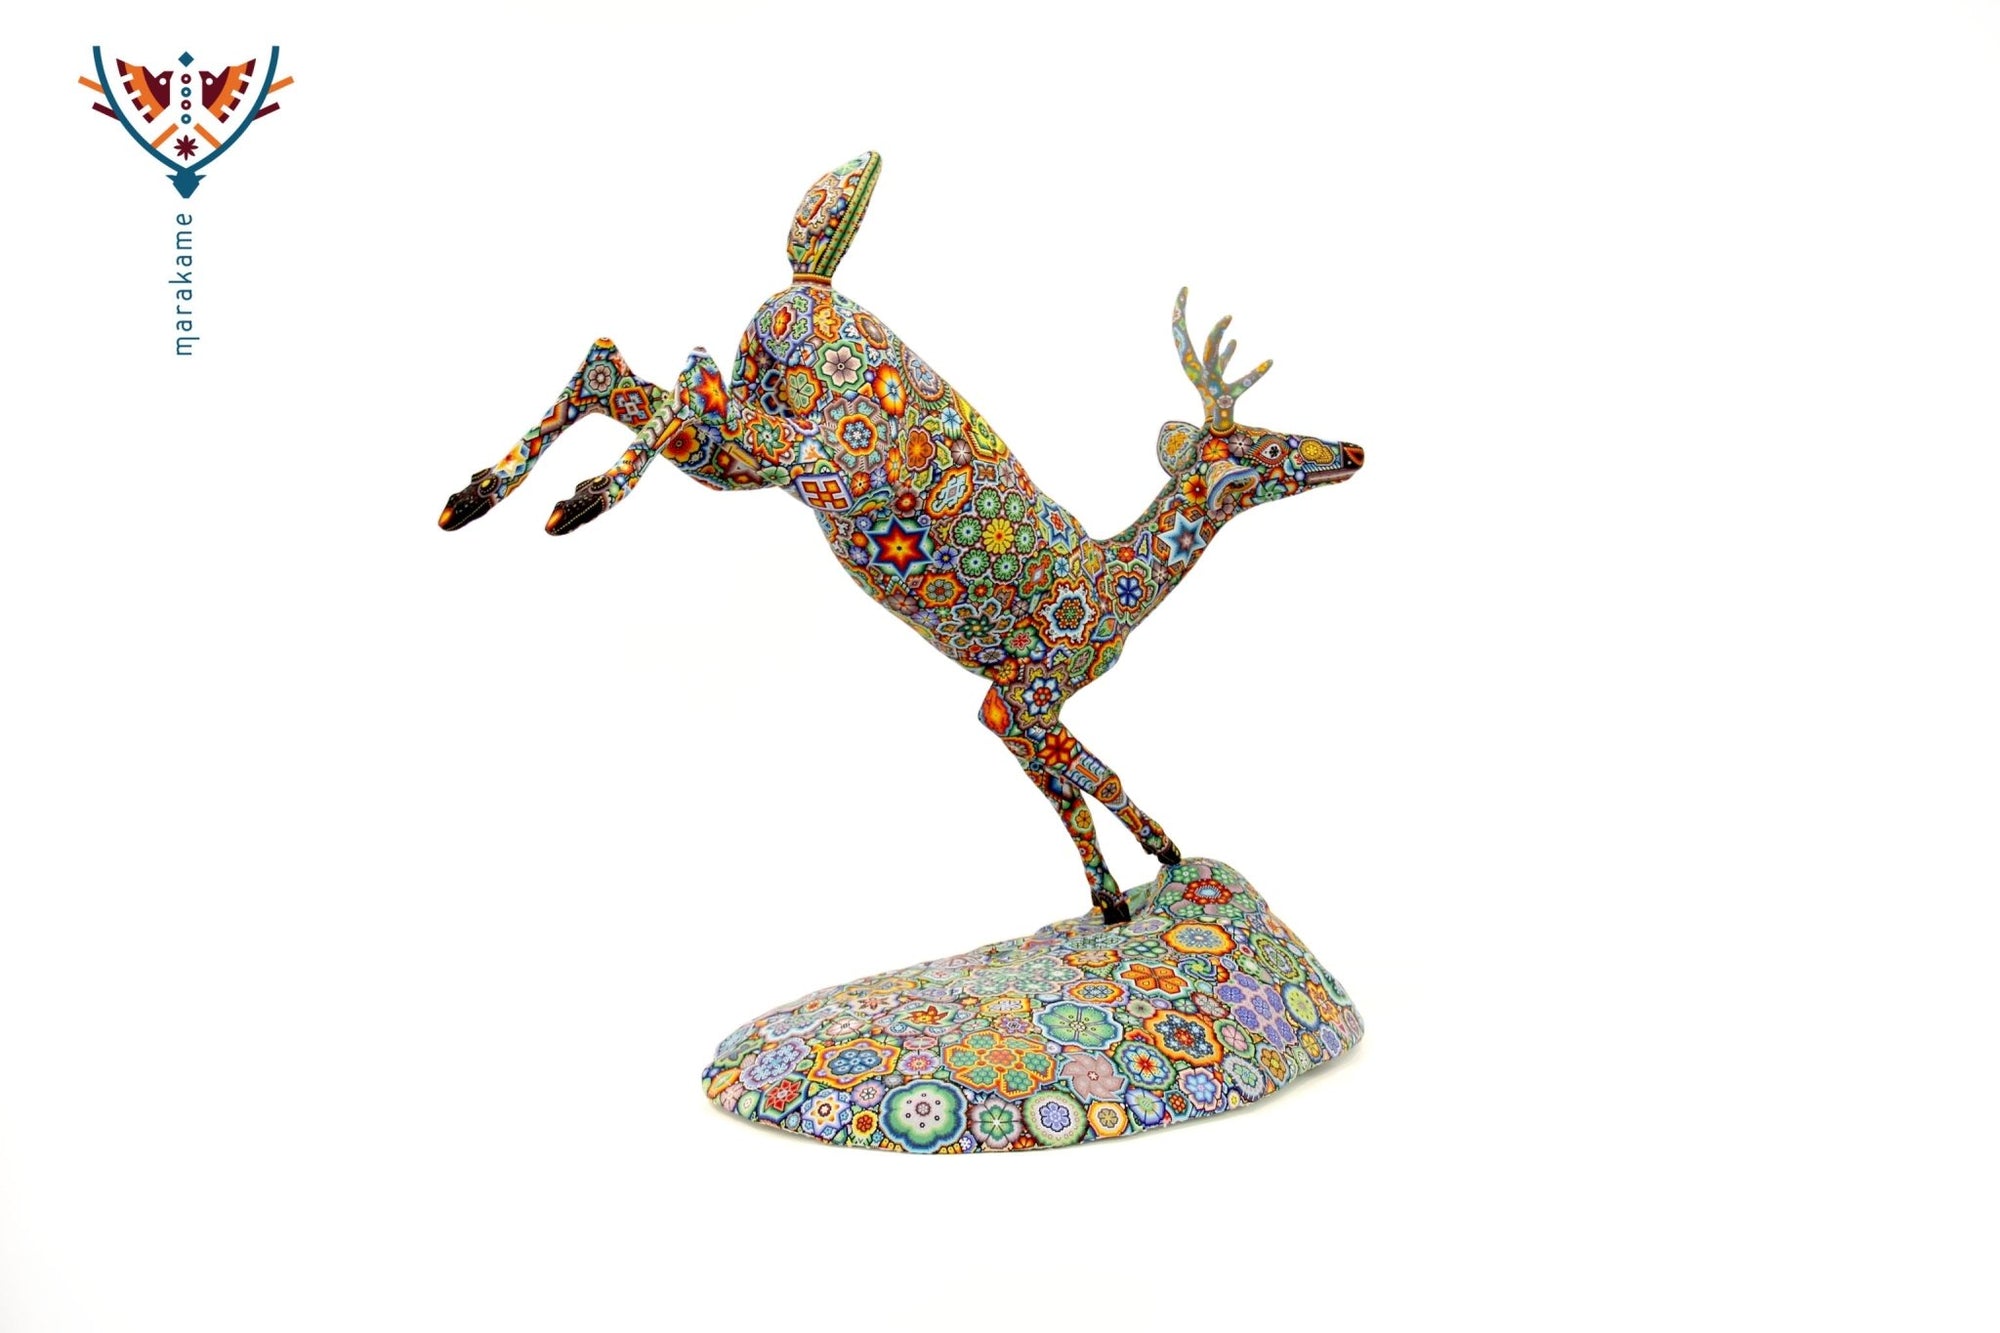 Huichol Art Sculpture - Leaping Deer - Maxa utsik+kame - Huichol Art - Marakame